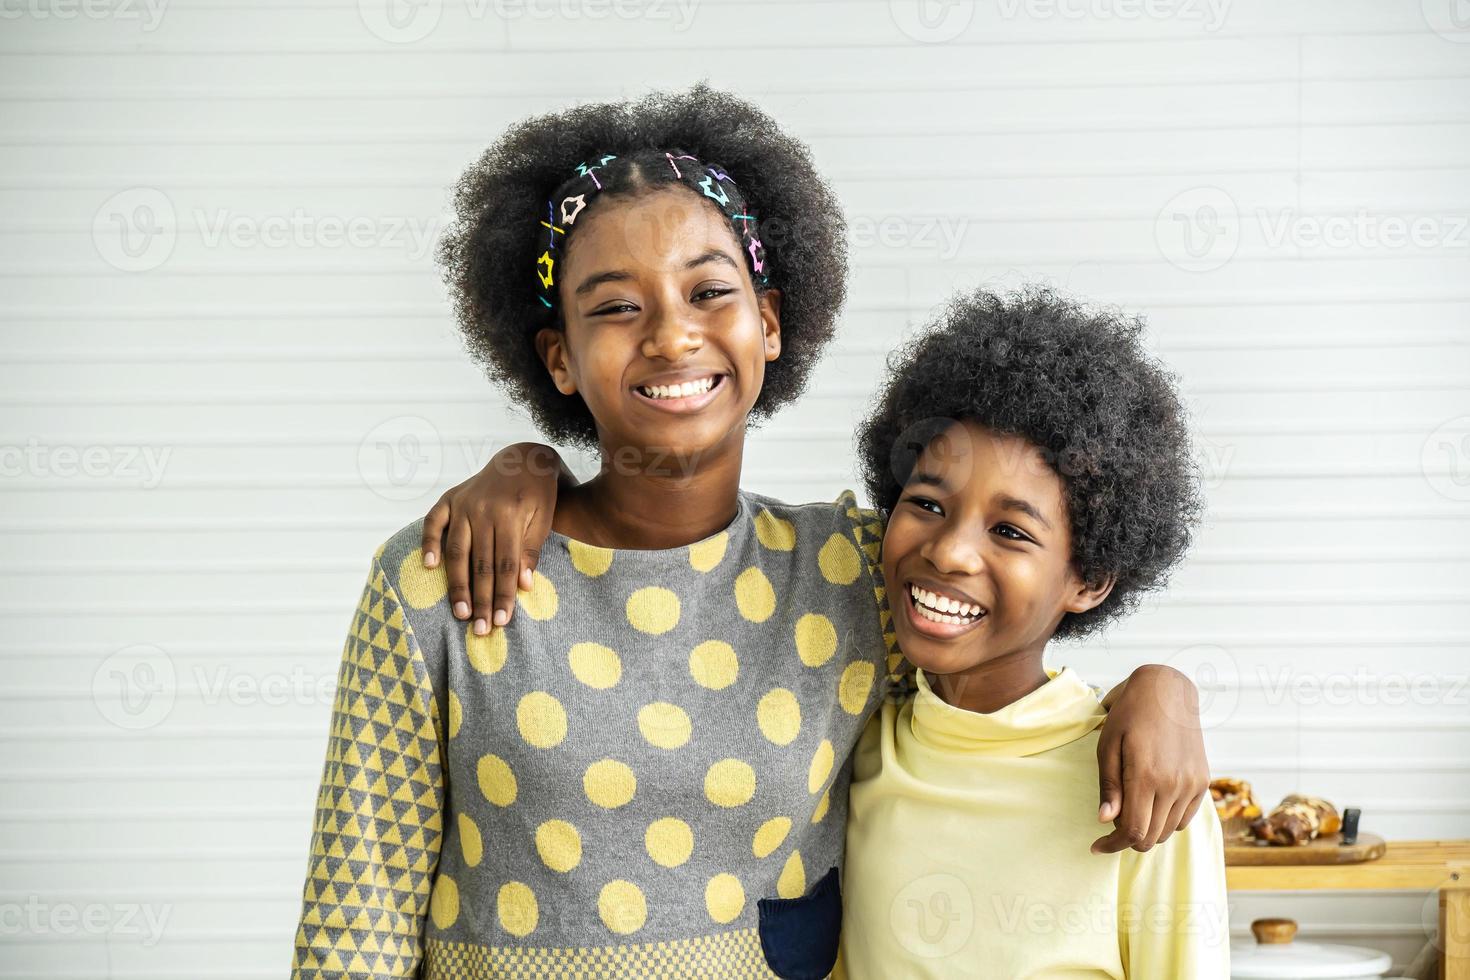 crianças felizes dois irmãos adoráveis e fofos crianças afro-americanas abraçam o pescoço e sorriem, a irmã mais velha abraça o irmãozinho pelo pescoço foto